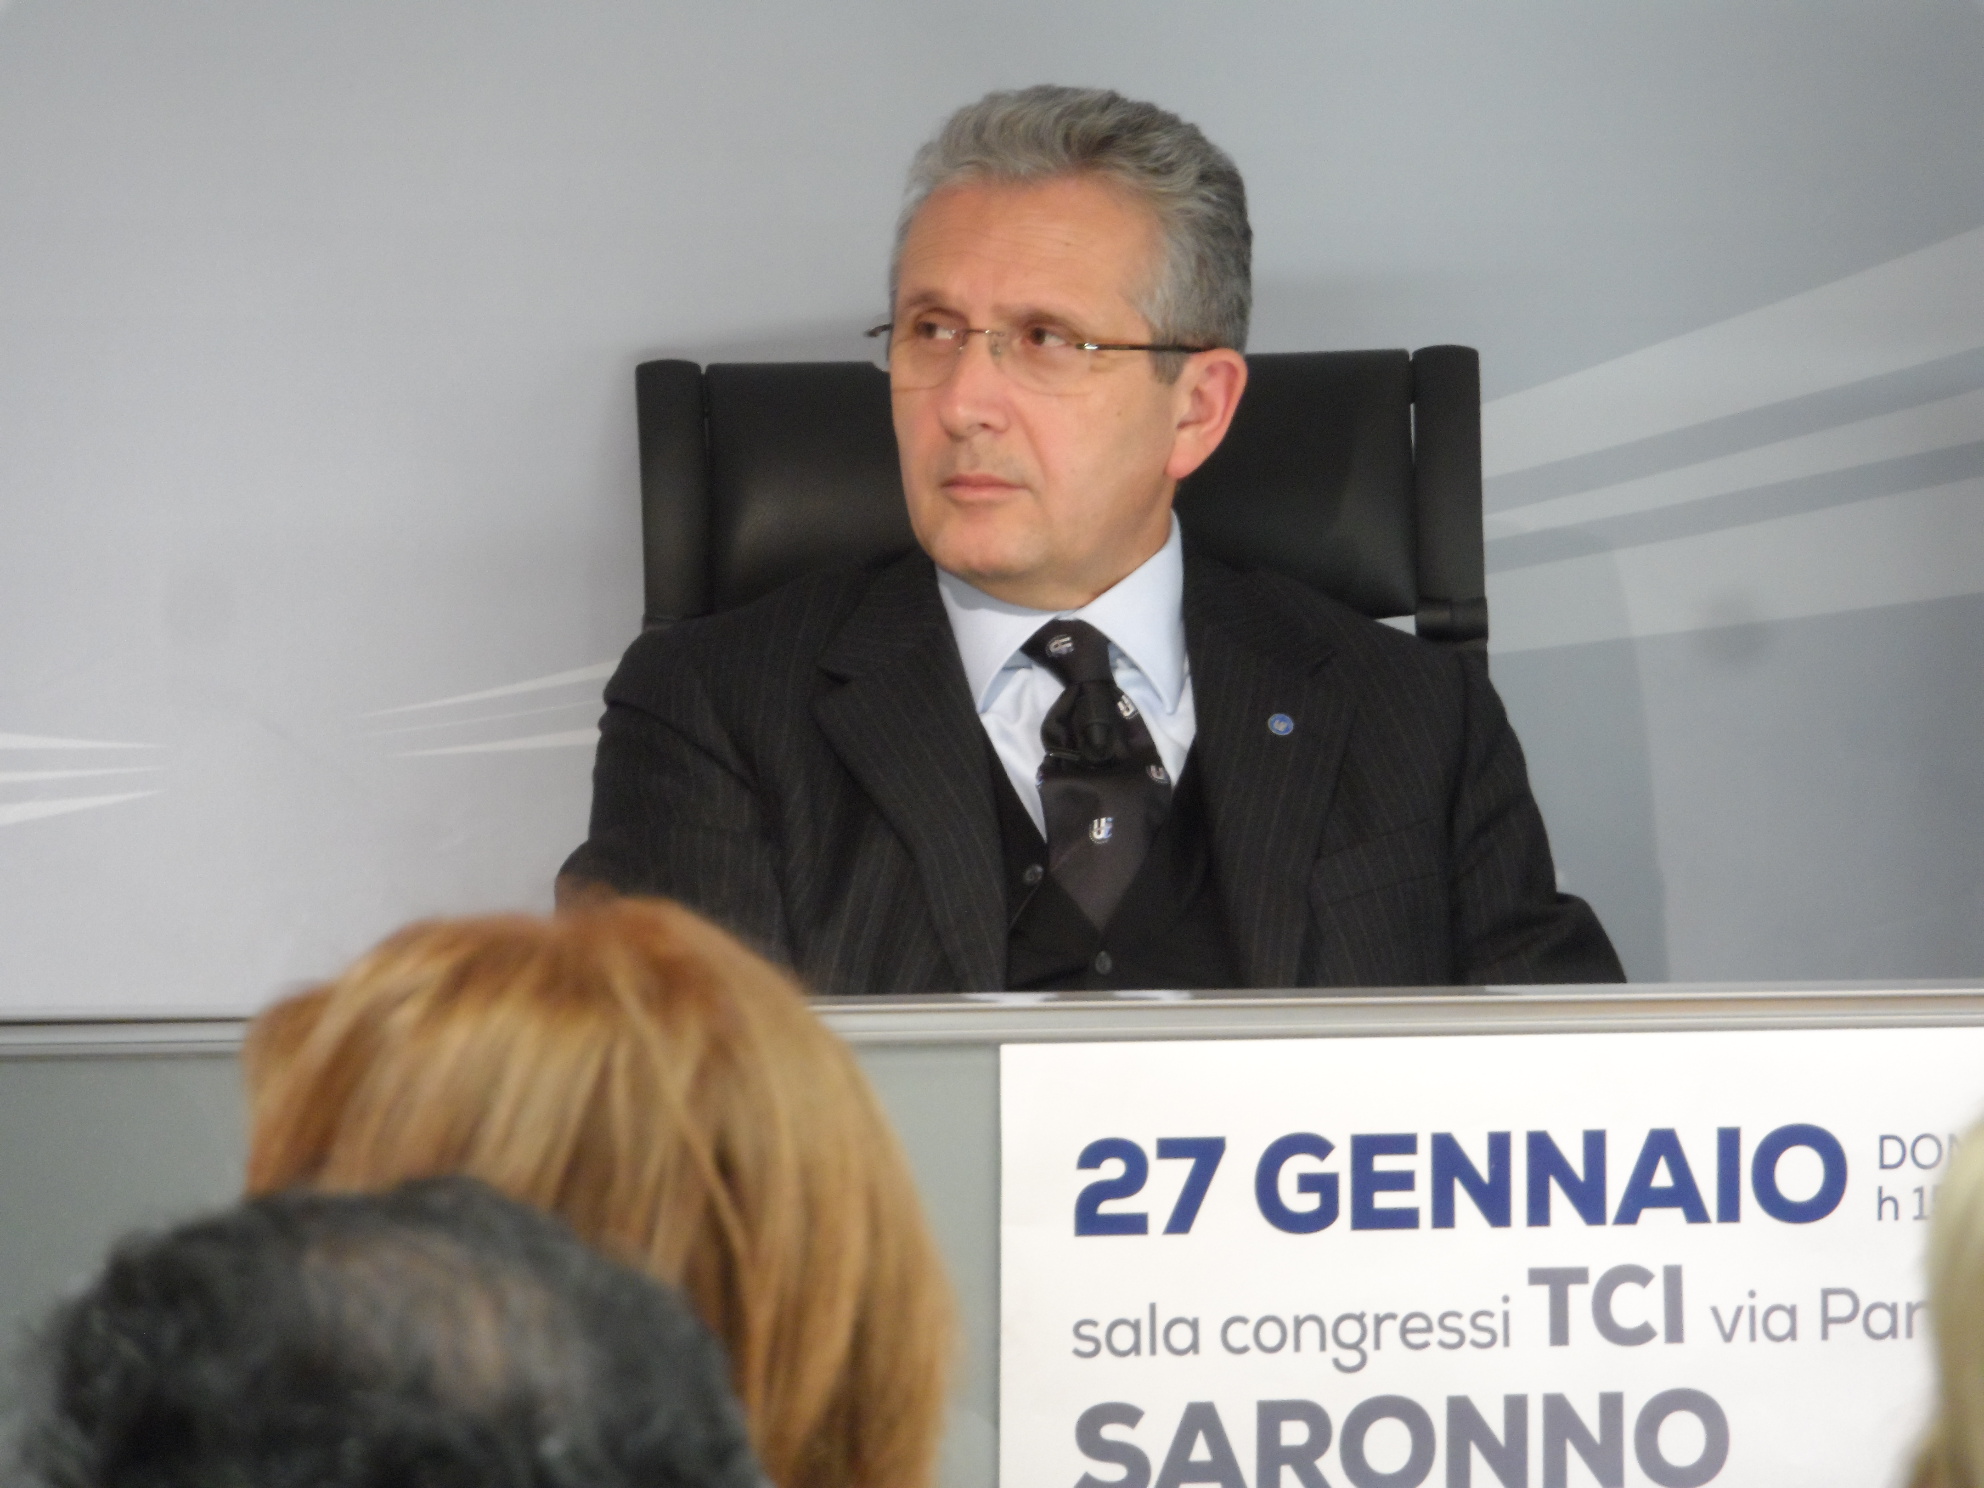 Gianfranco Librandi resta “fedele” a Scelta civica e a Monti